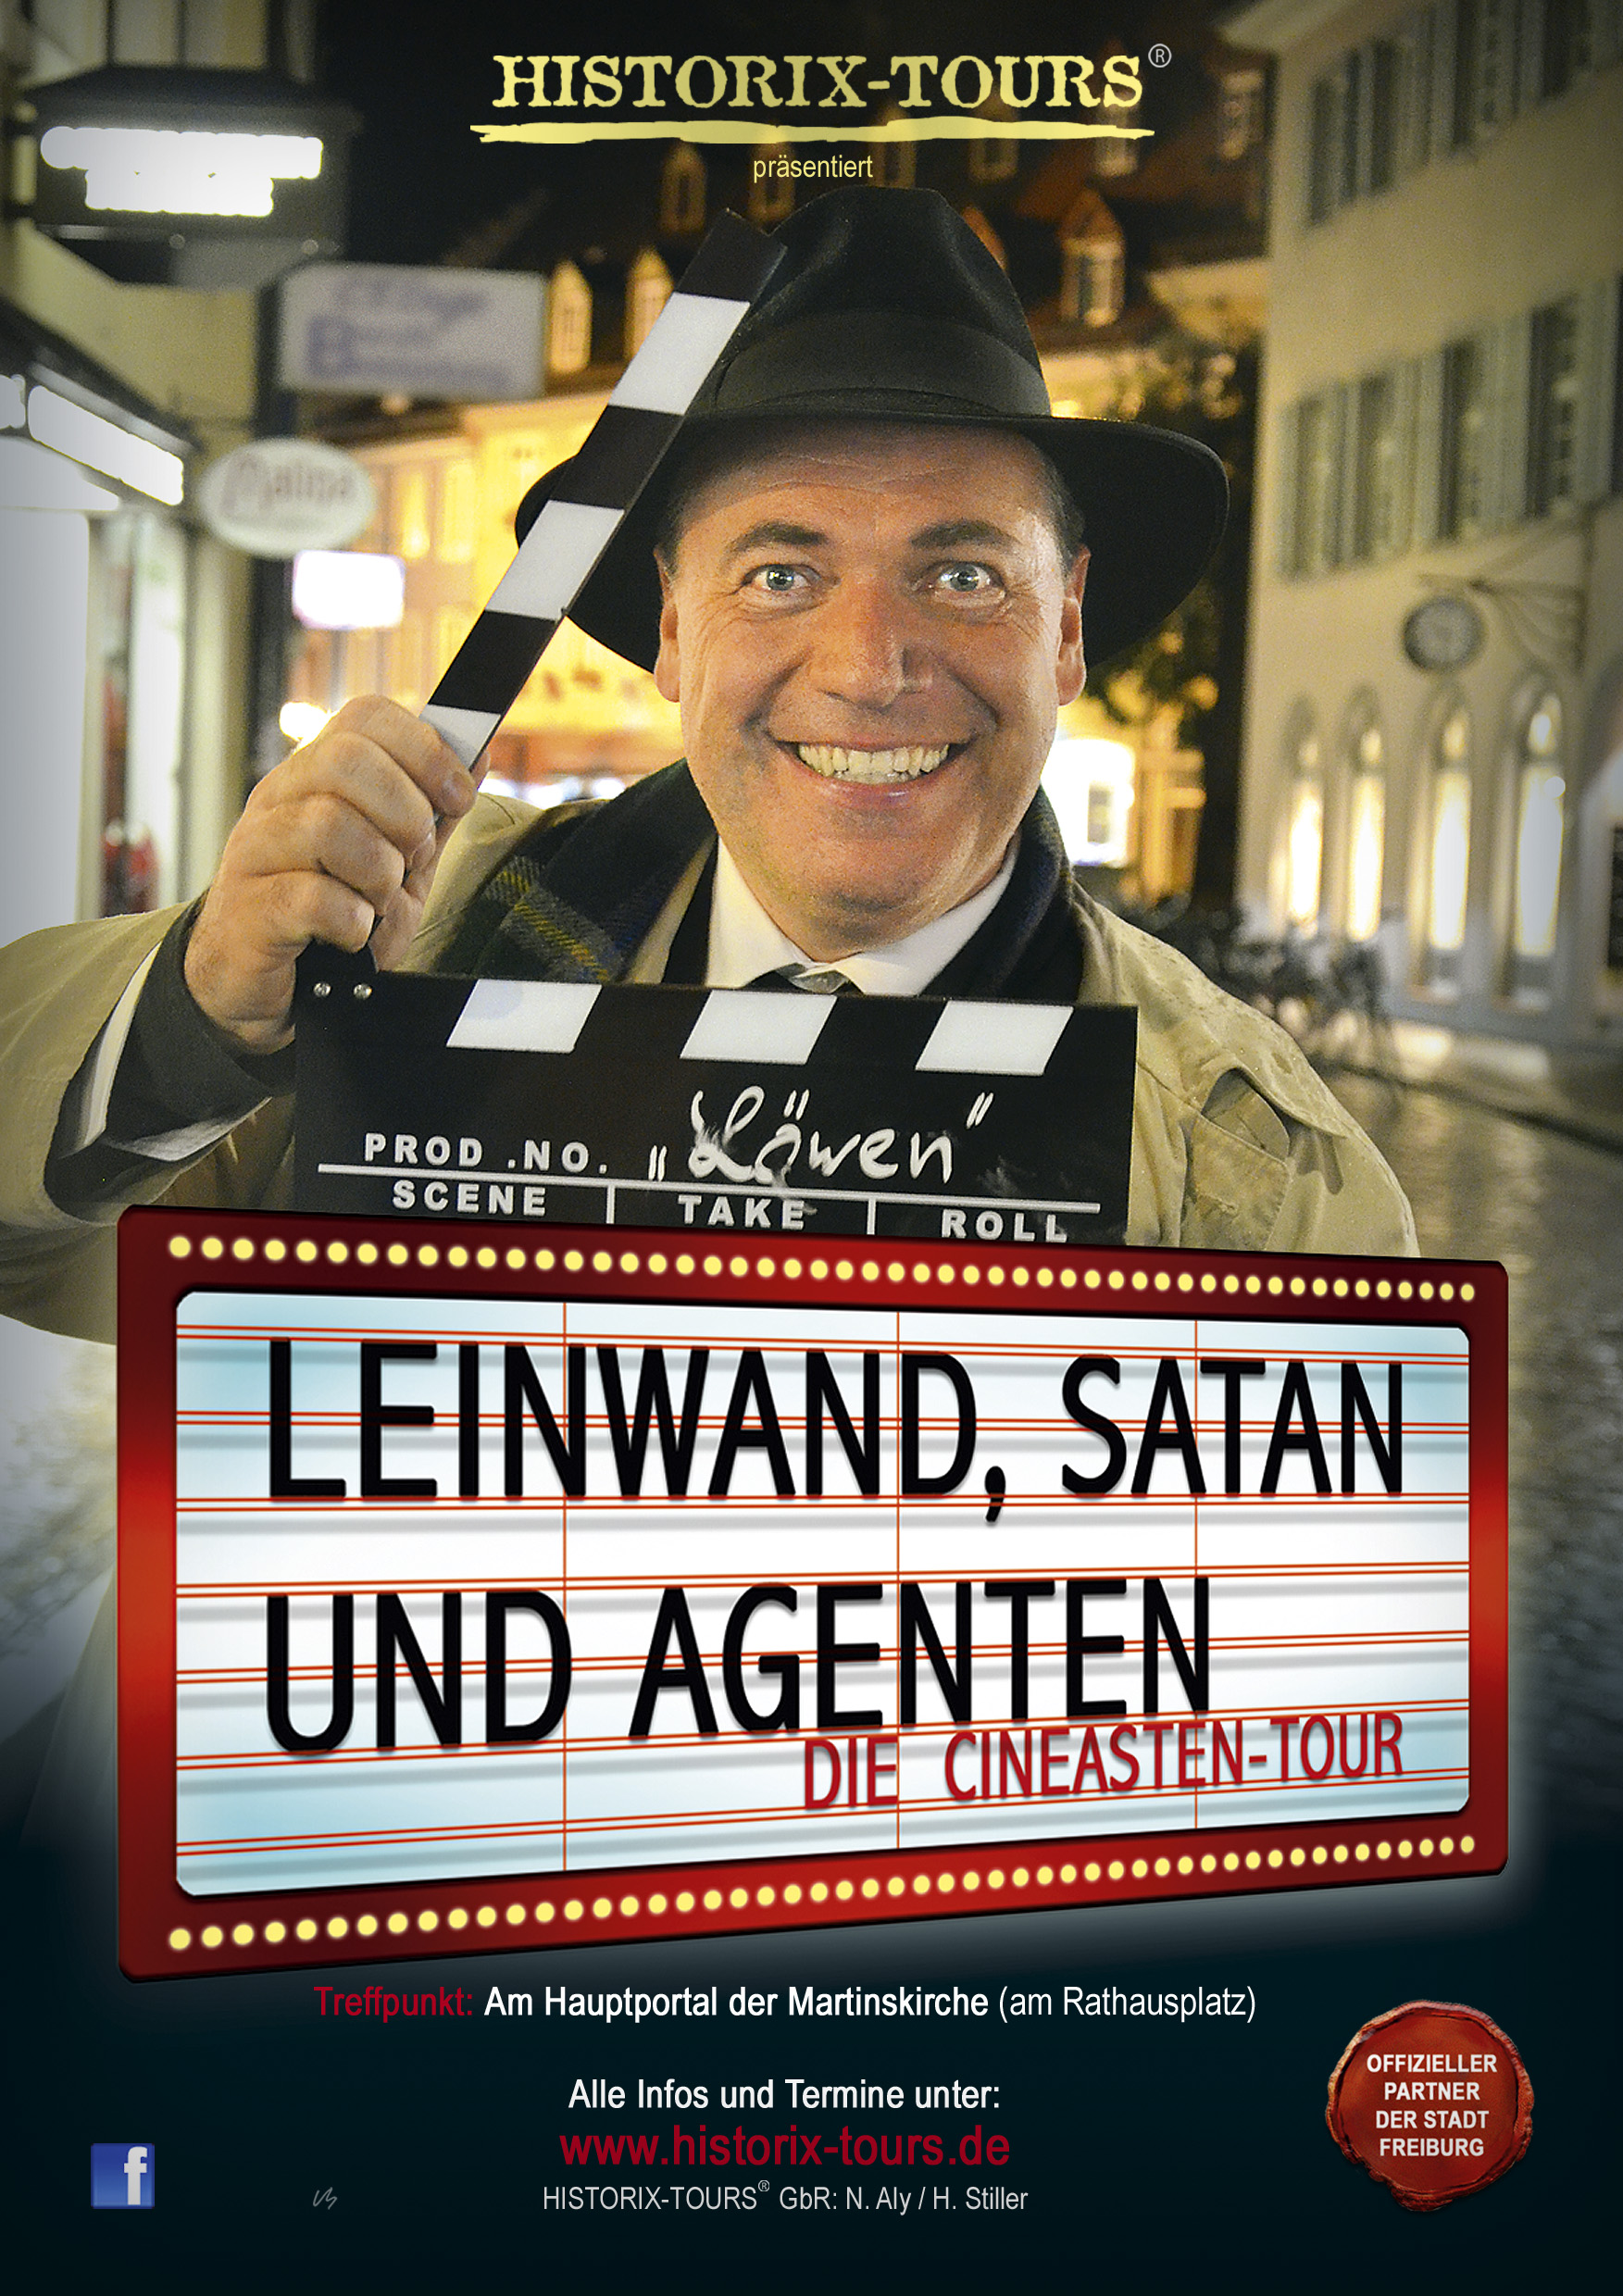 "Leinwand, Satan und Agenten" - Freiburgs Film-Tour mit überraschenden Geschichten    (ohne Anmeldung)